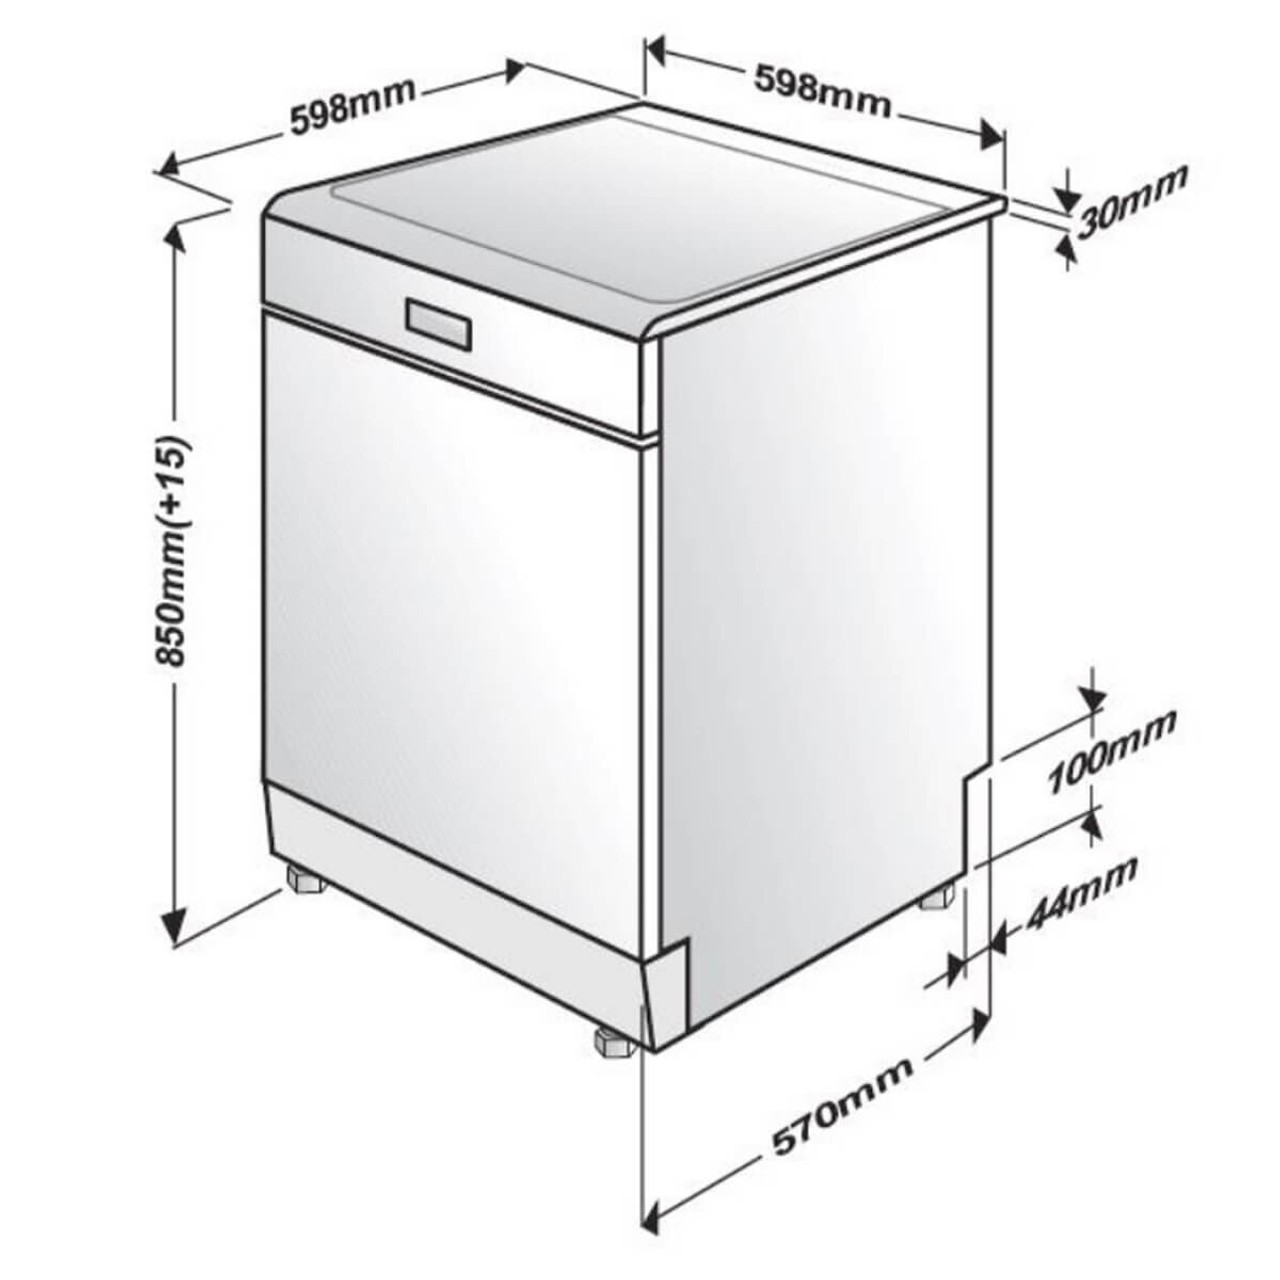 BDFB1430B - Freestanding Dishwasher 14 Place - Black